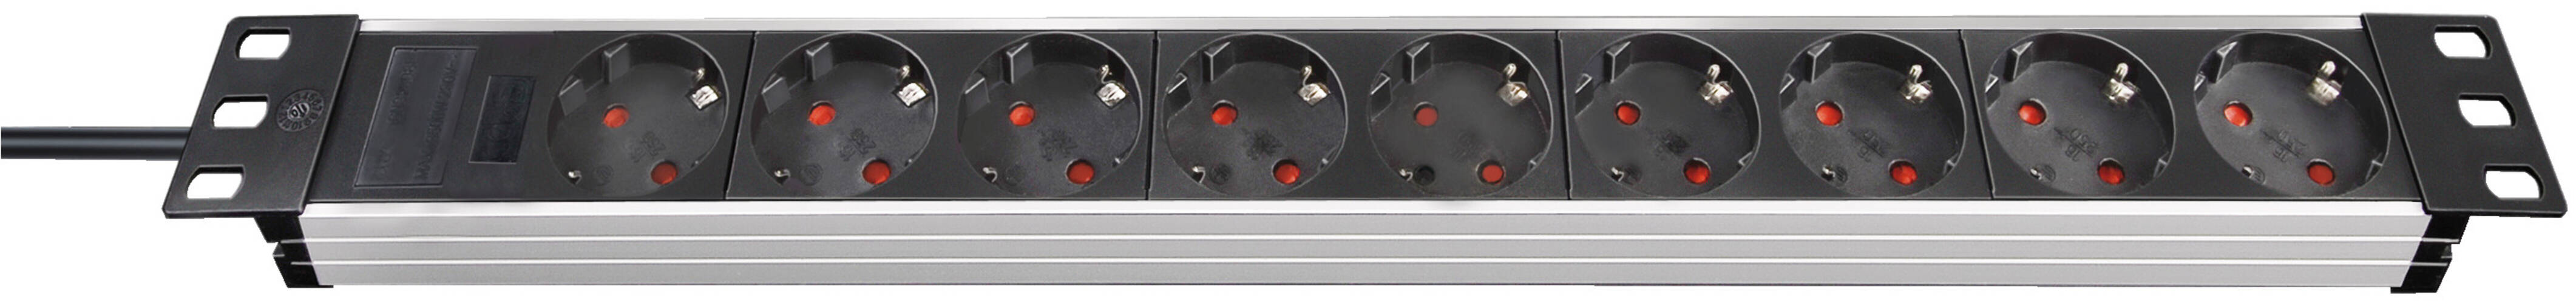 Hochwertige Steckdosenleiste für Schaltschränke von Brennenstuhl Alu Line 19 - 9 fach schwarz silber 2m H05VV F 3G1 5 ohne Schalter